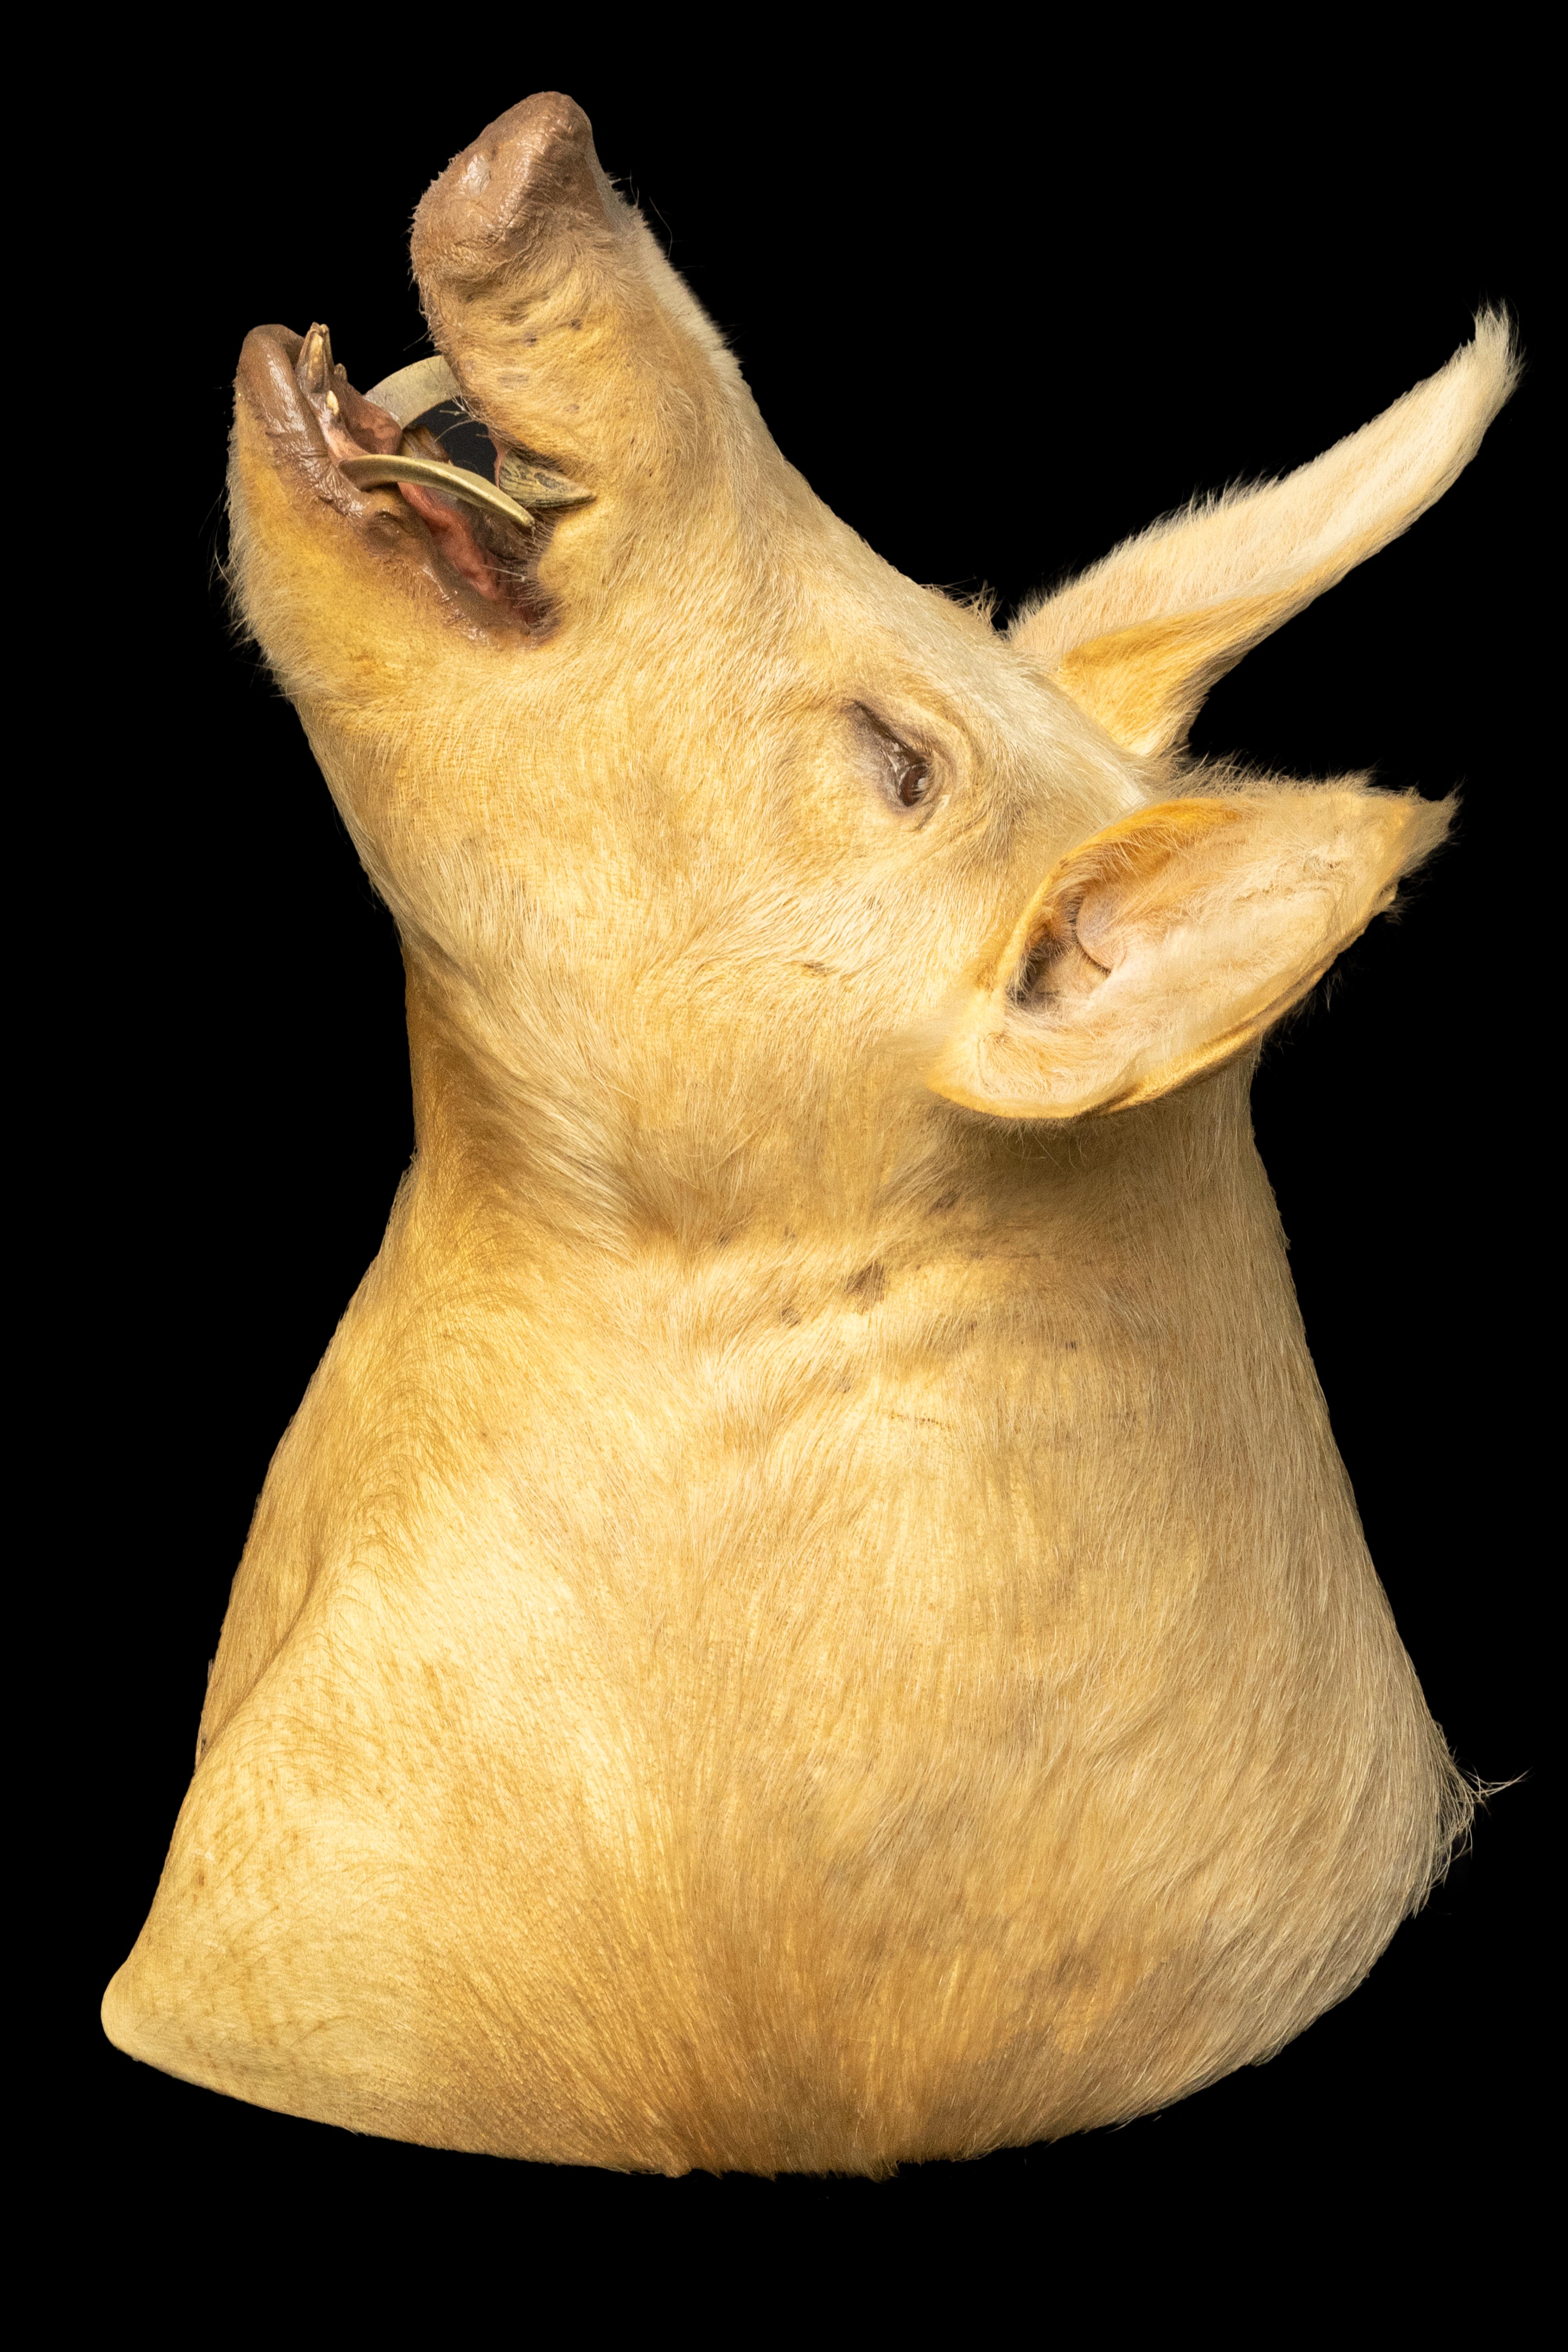 Diese Schweineschulterpräparate sind eine einzigartige und beeindruckende Ergänzung für jede Sammlung. Das Reittier fängt das Wesen dieses gewöhnlichen Nutztieres ein, mit seiner ausgeprägten Schnauze, den großen Ohren und den Hauern.

Mit den Maßen